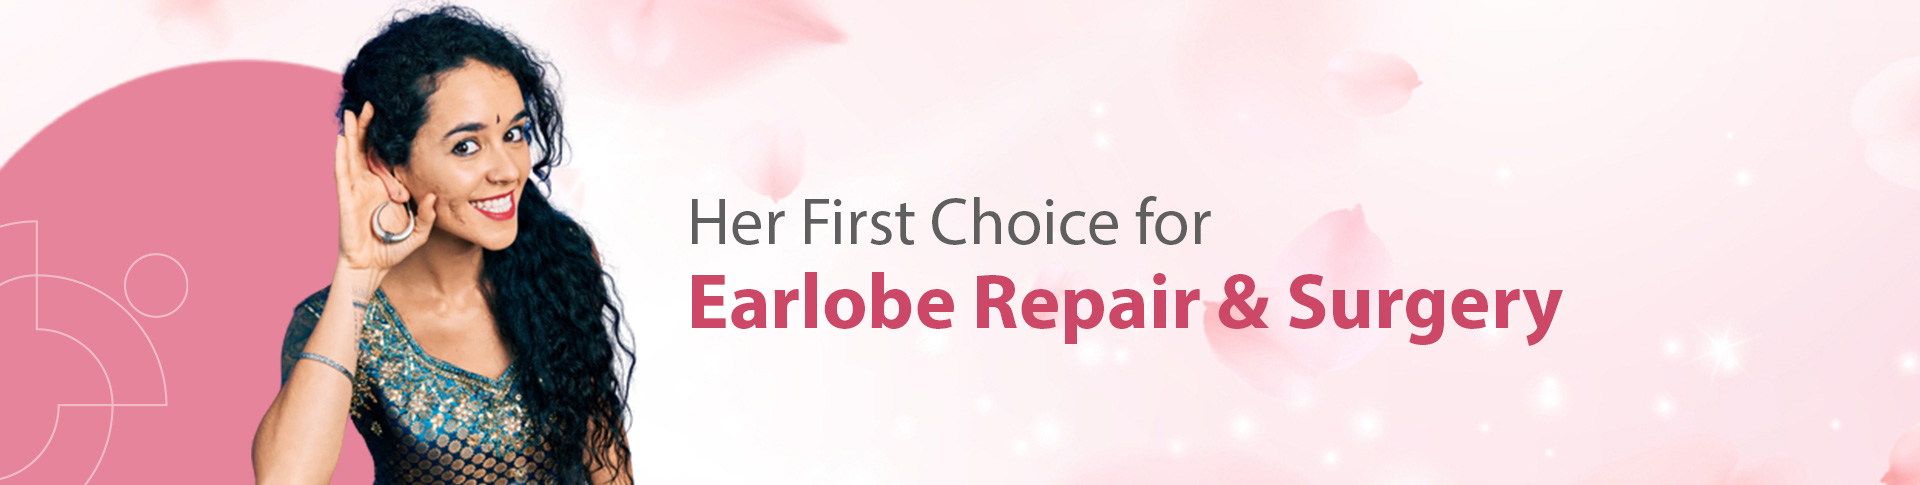 Earlobe Repair & Surgery